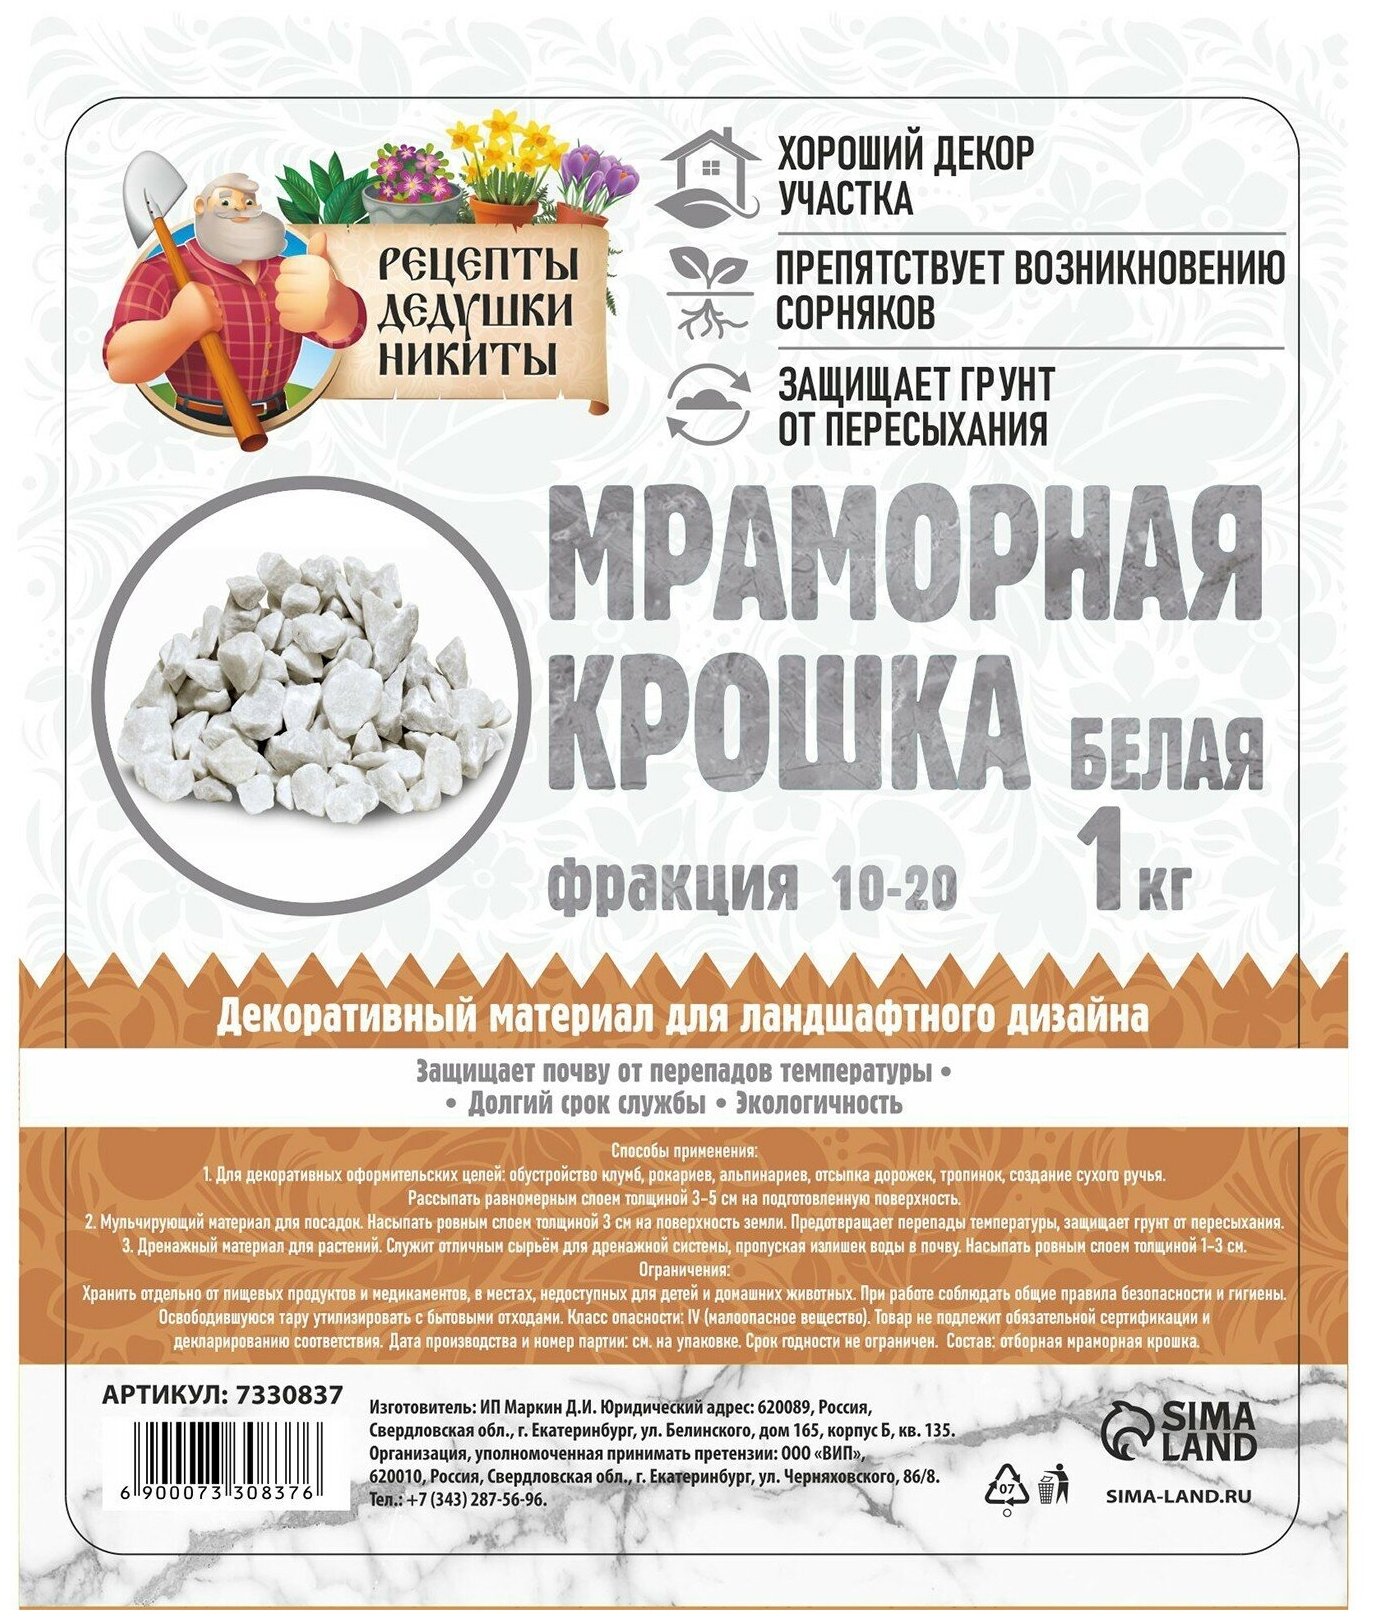 Мраморная крошка Рецепты дедушки Никиты отборная, белая, фракция 10-20 мм, 1 кг